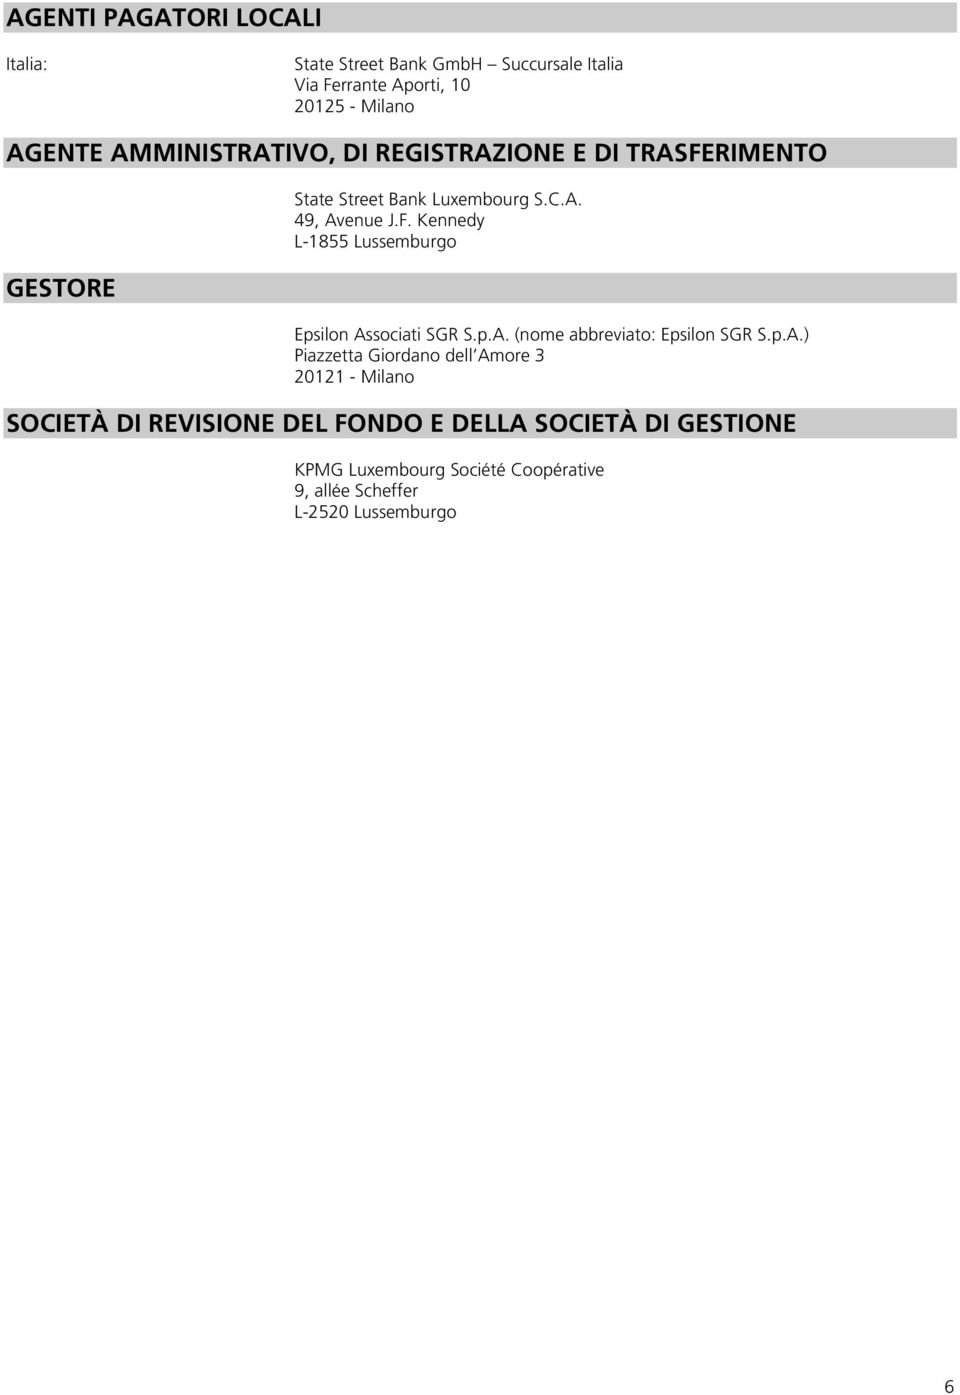 p.A. (nome abbreviato: Epsilon SGR S.p.A.) Piazzetta Giordano dell Amore 3 20121 - Milano SOCIETÀ DI REVISIONE DEL FONDO E